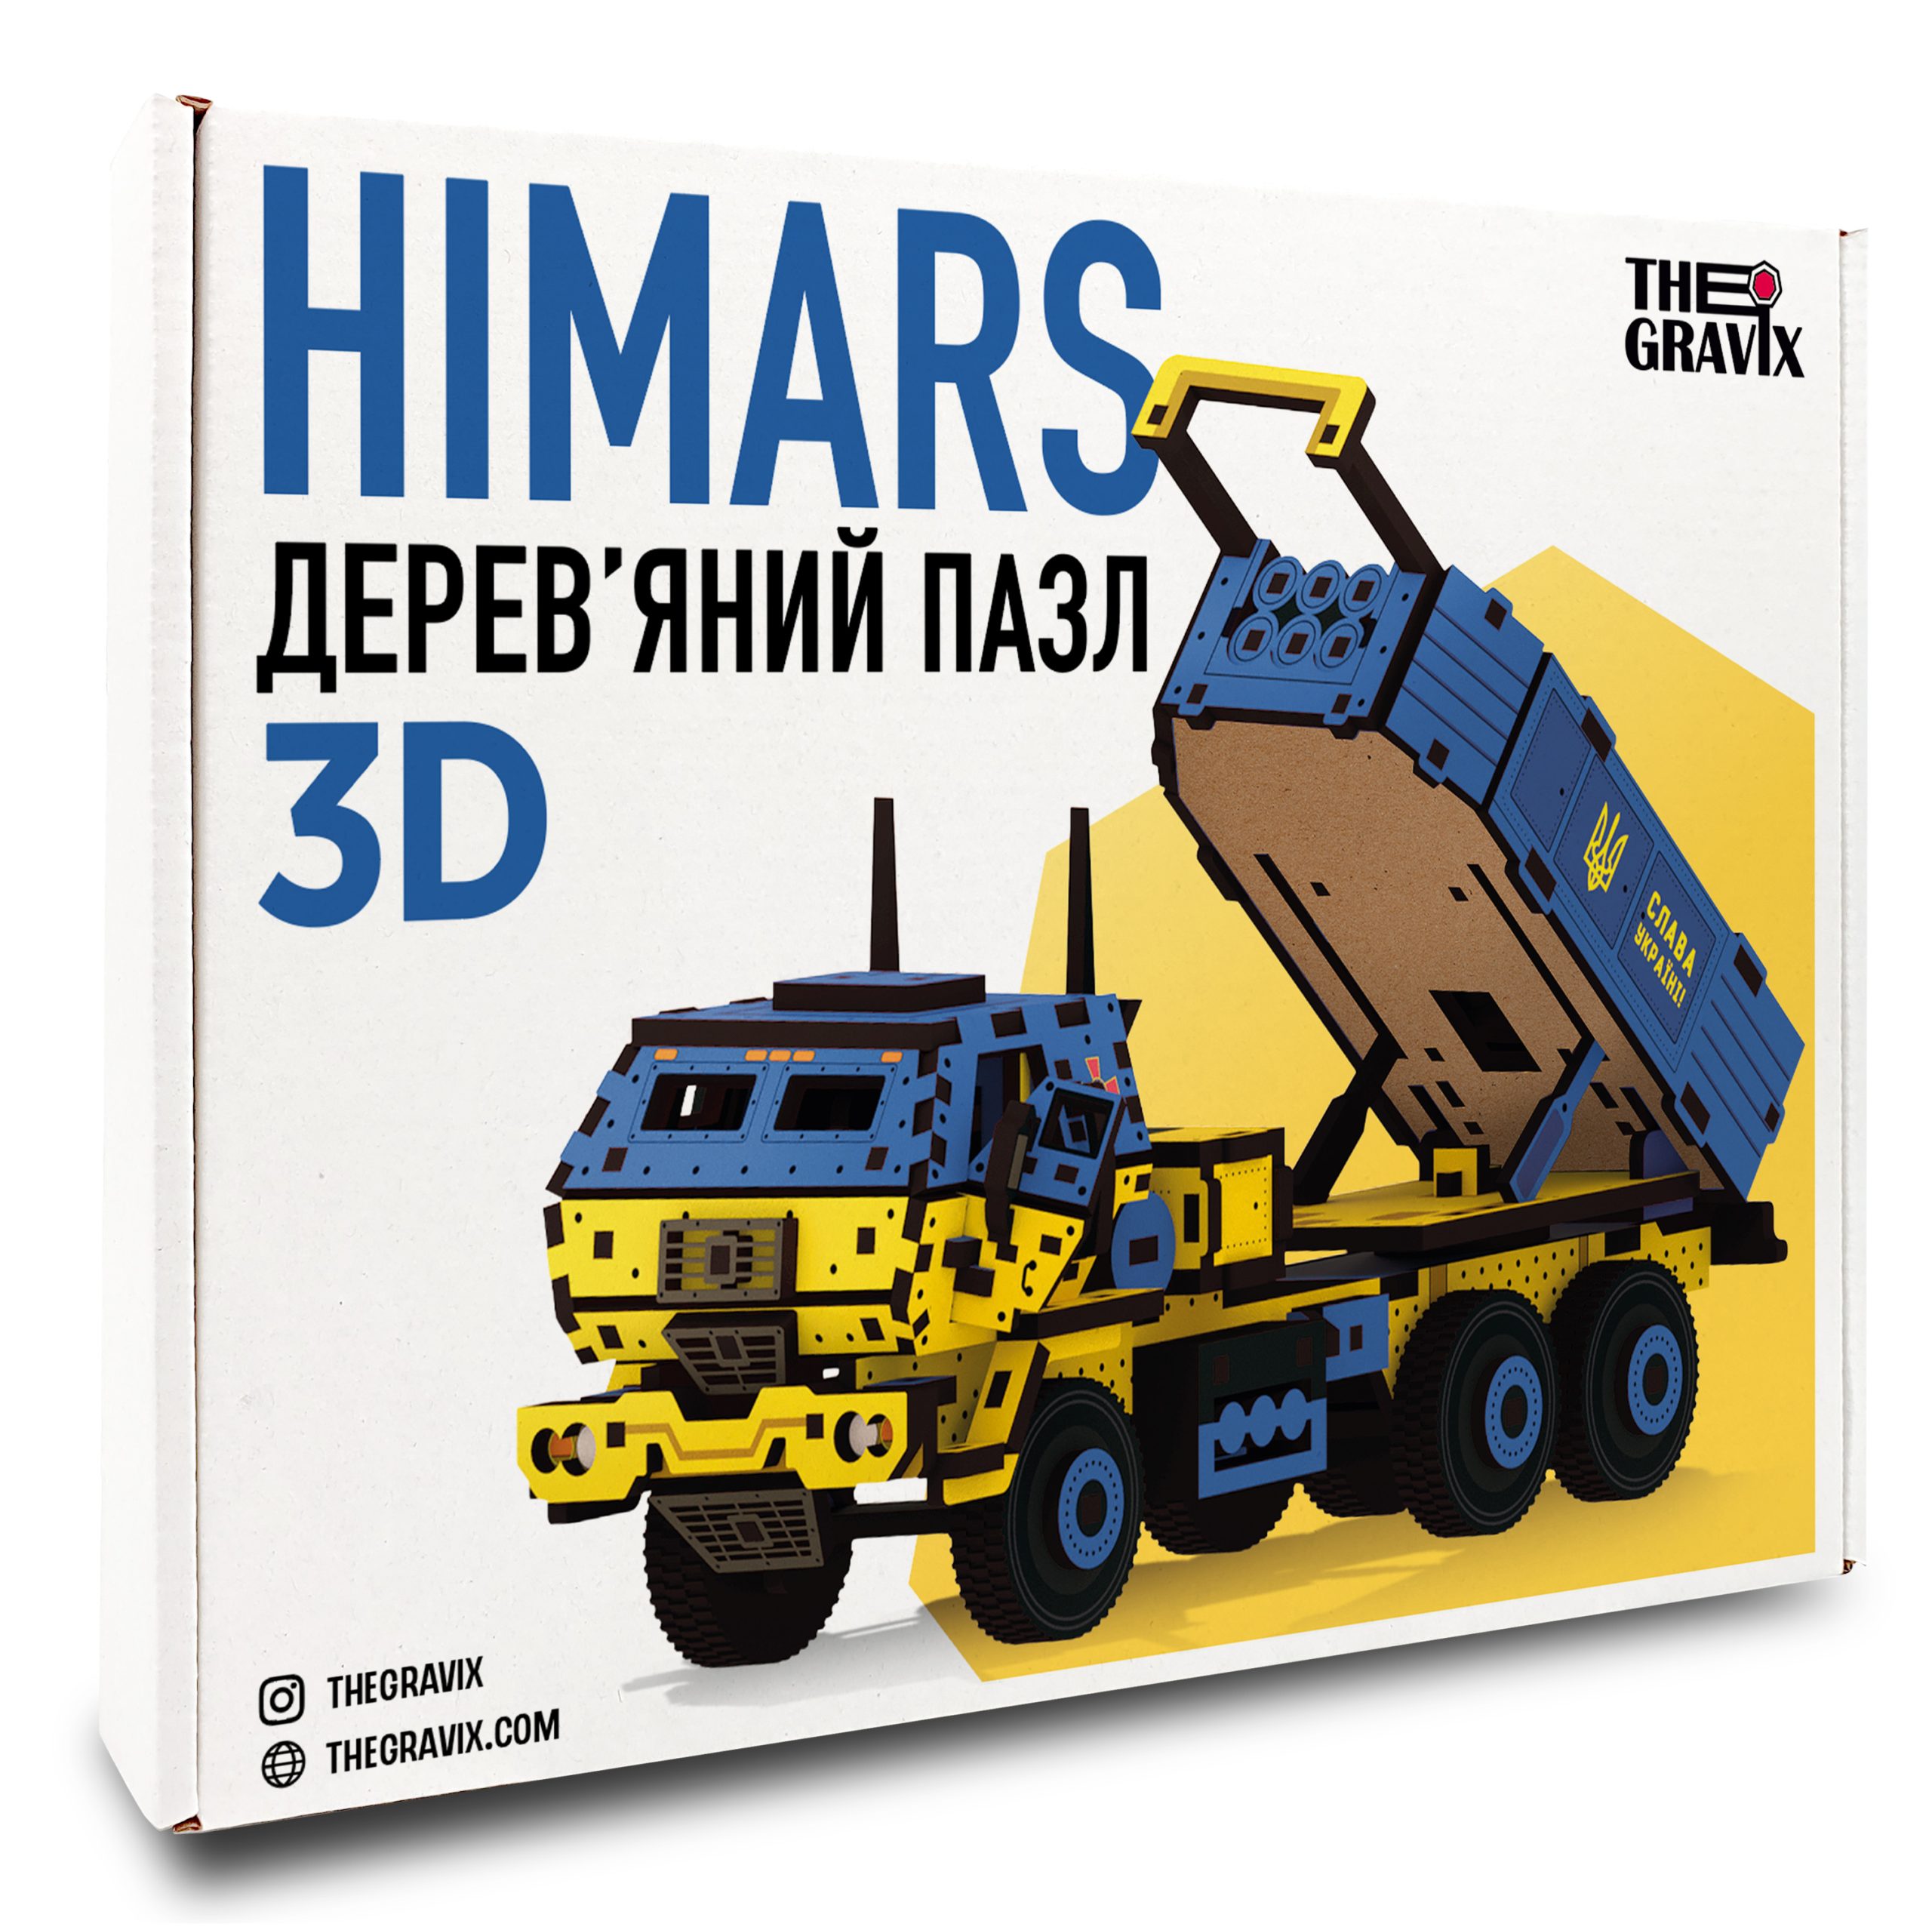 Деревянный 3D Пазл "HIMARS" 235 шт Жёлто-Синий